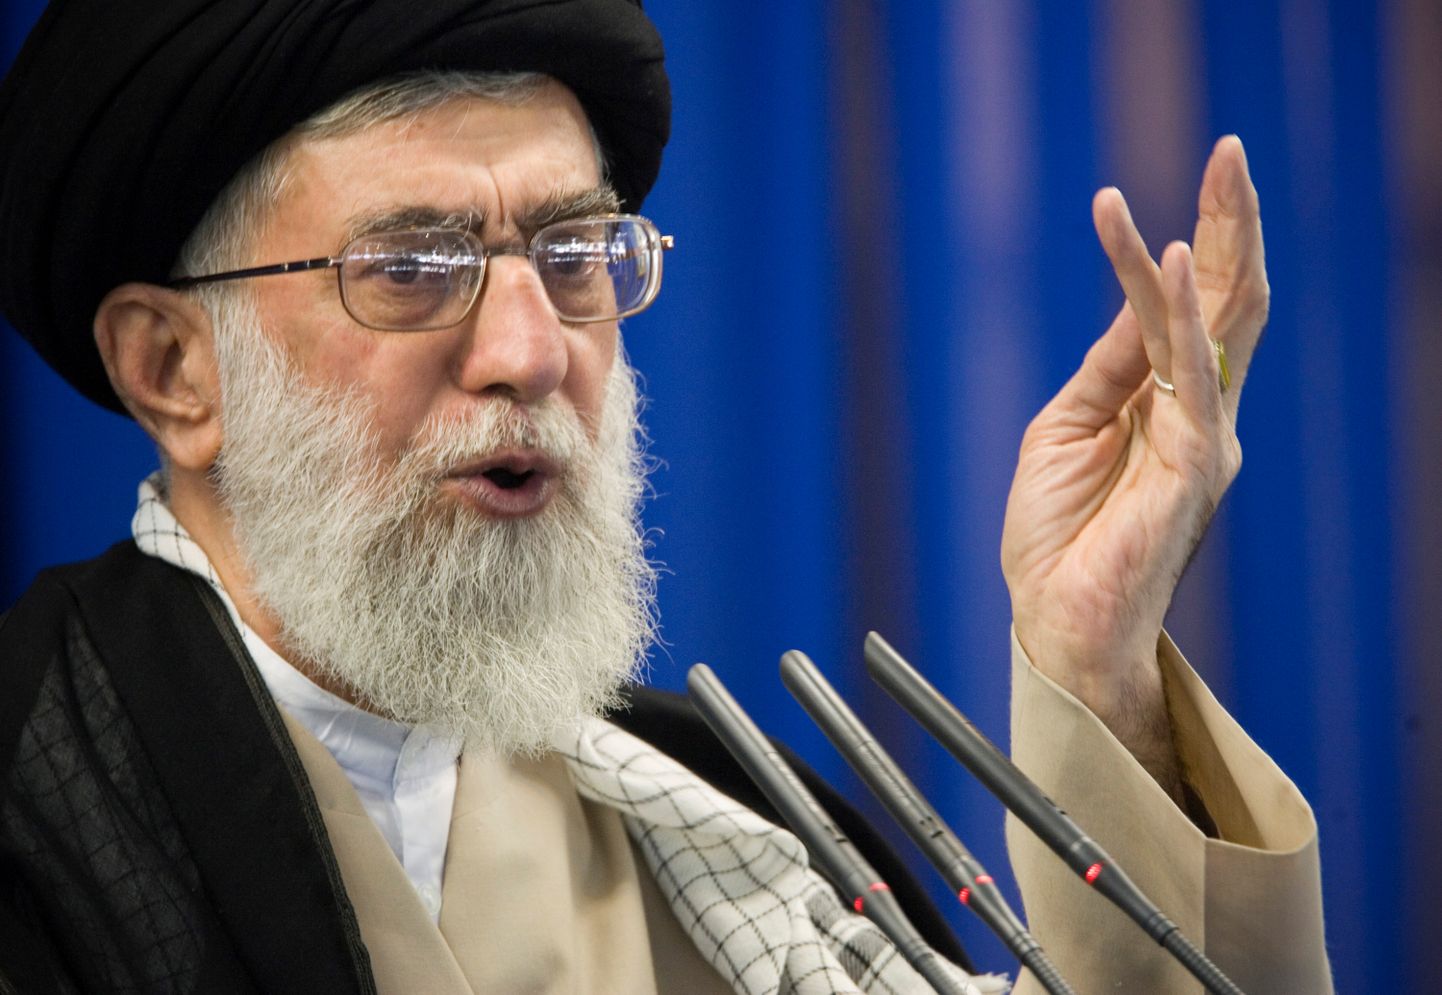 Iraani ülemjuht ajatolla Ali Khamenei.